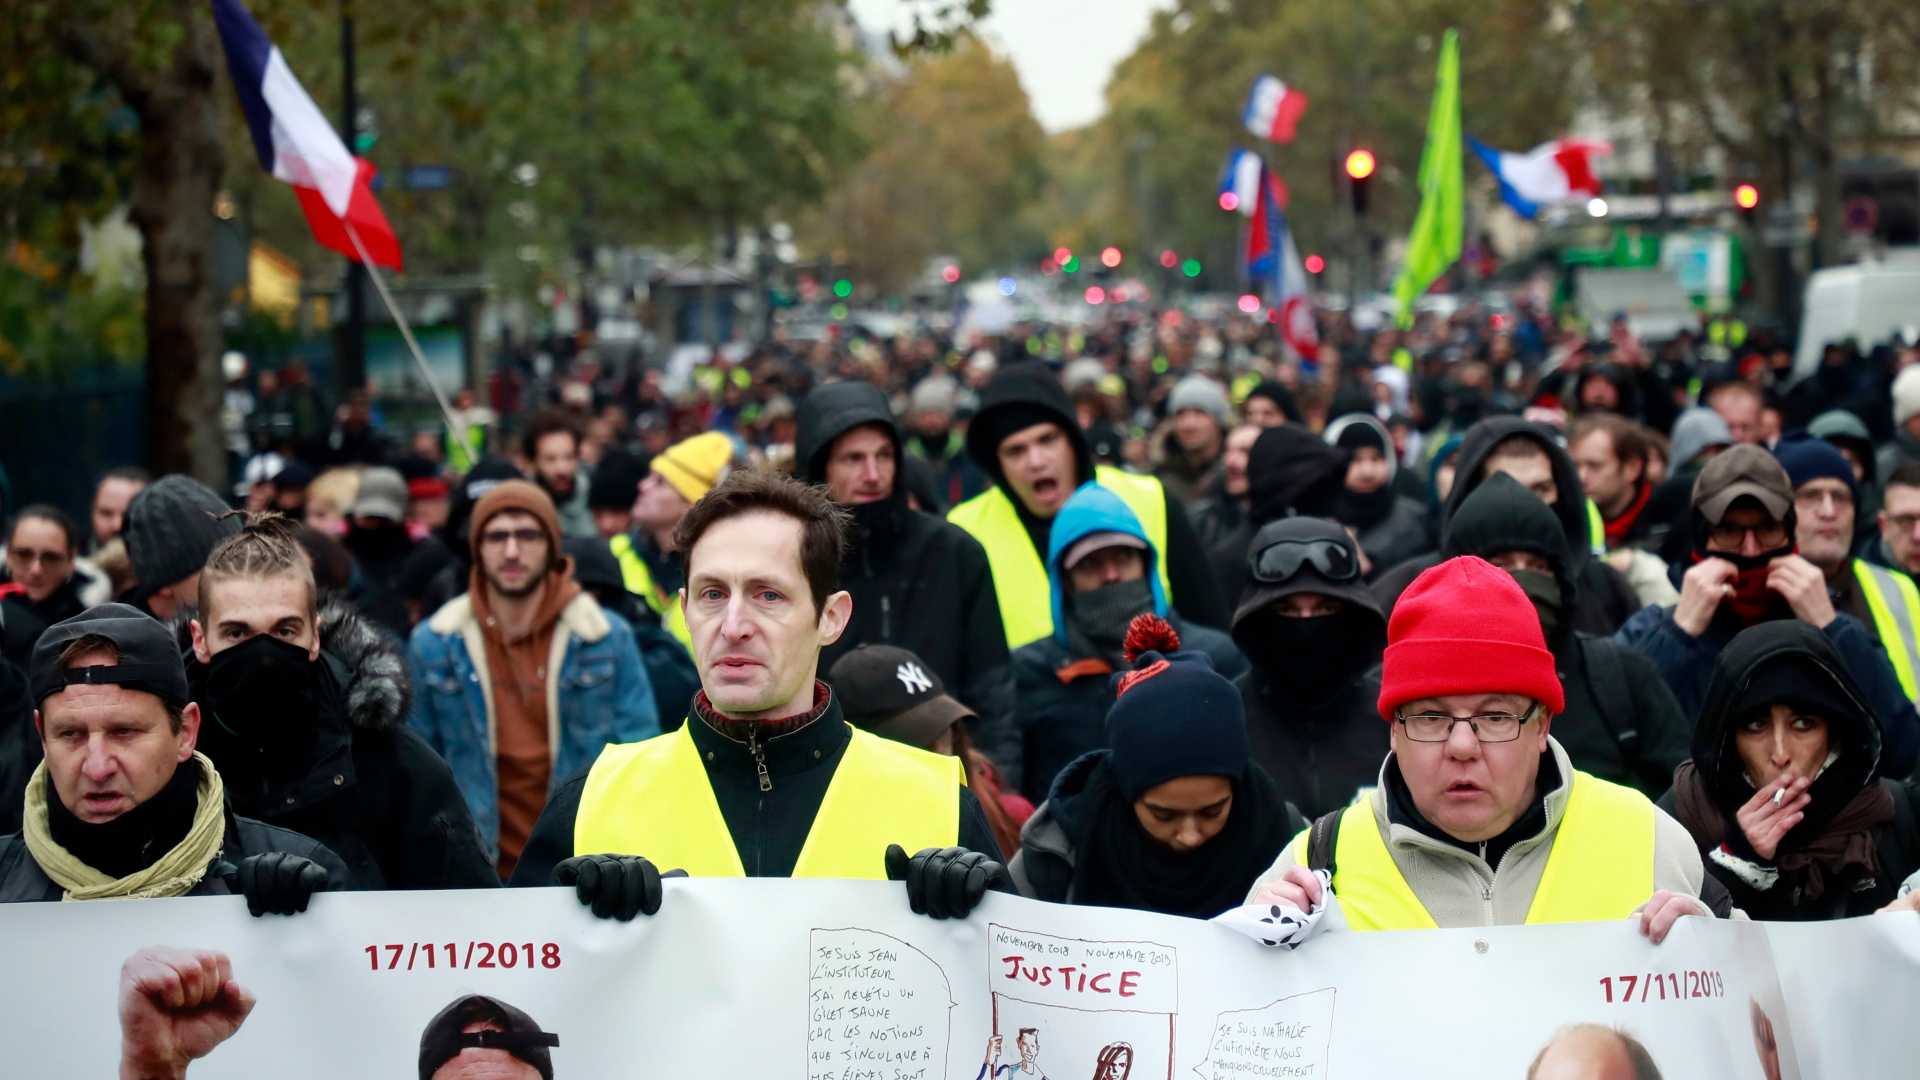 Bildergebnis für fotos vom gelbwestenprotest am 16.11.19 in paris